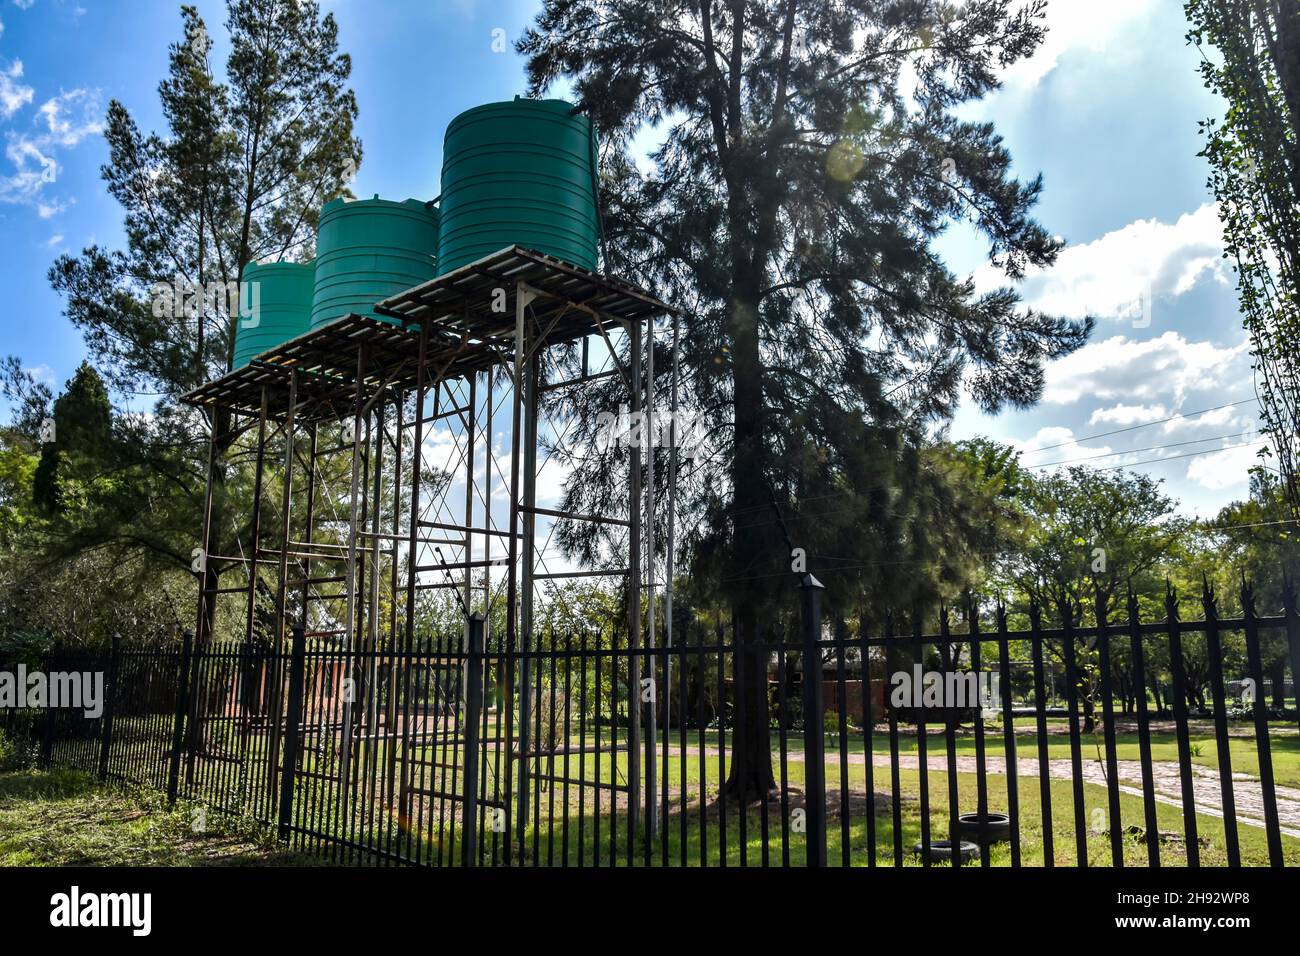 Serbatoi o contenitori di acqua in plastica verde su una struttura o torre di metallo sopraelevata per la pressione comunemente utilizzati in Africa meridionale per la stor d'acqua domestica Foto Stock